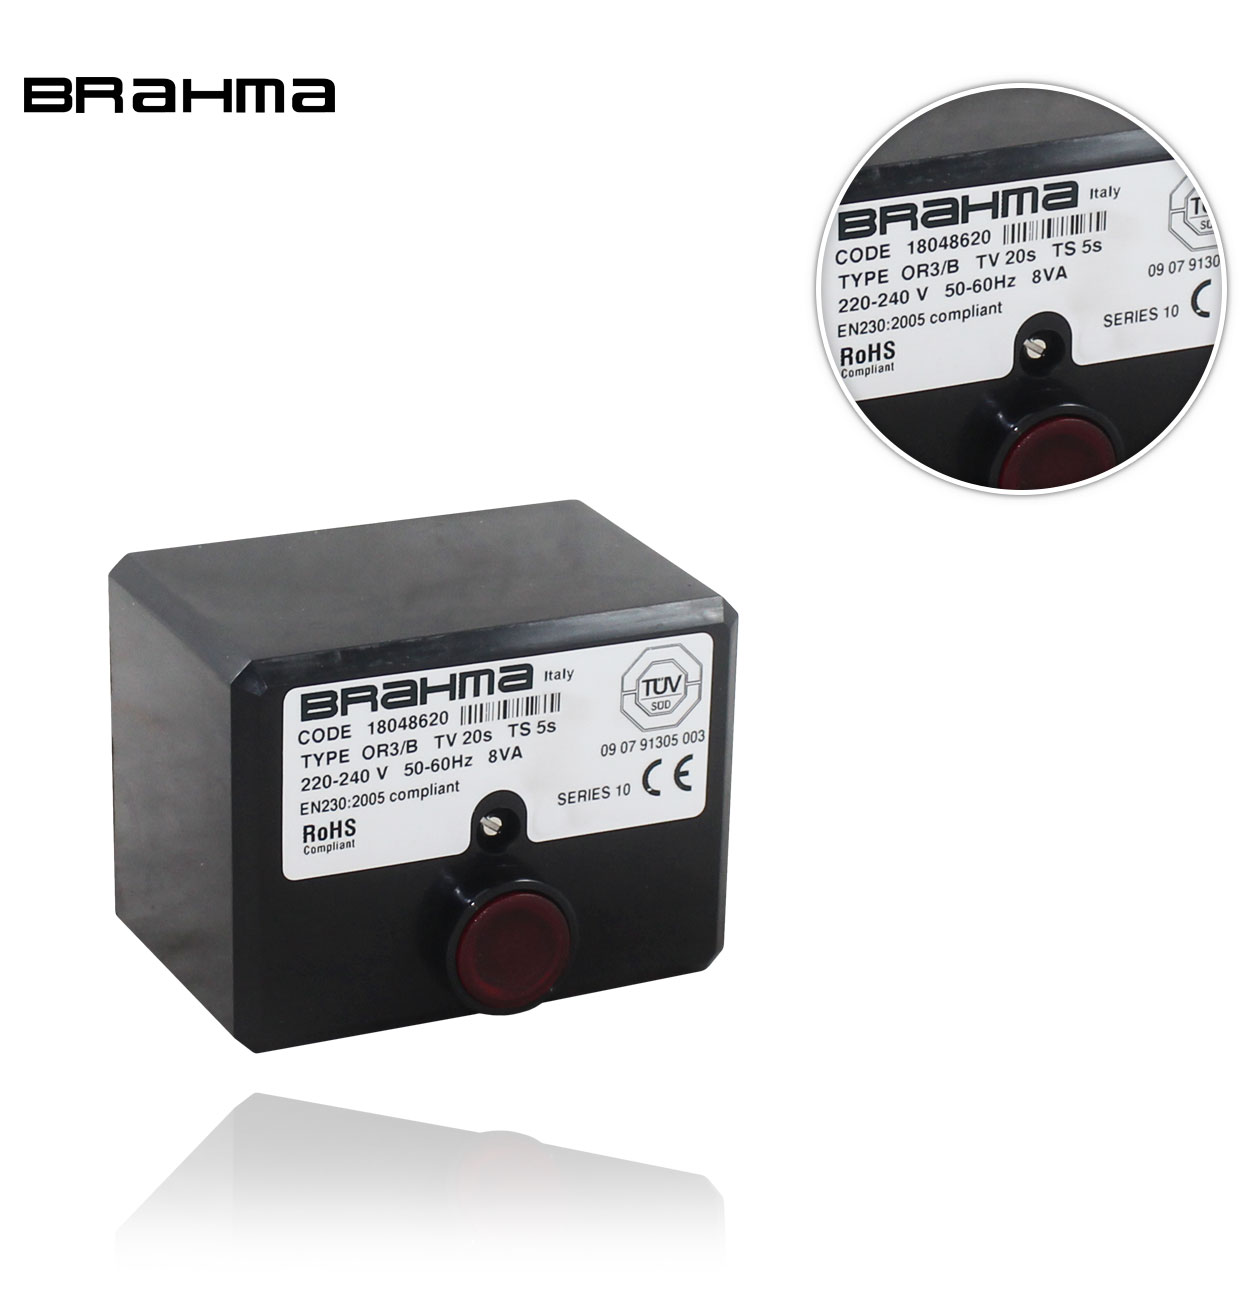 OR3 /B S10 TW20 TS5 BRAHMA CONTROL BOX